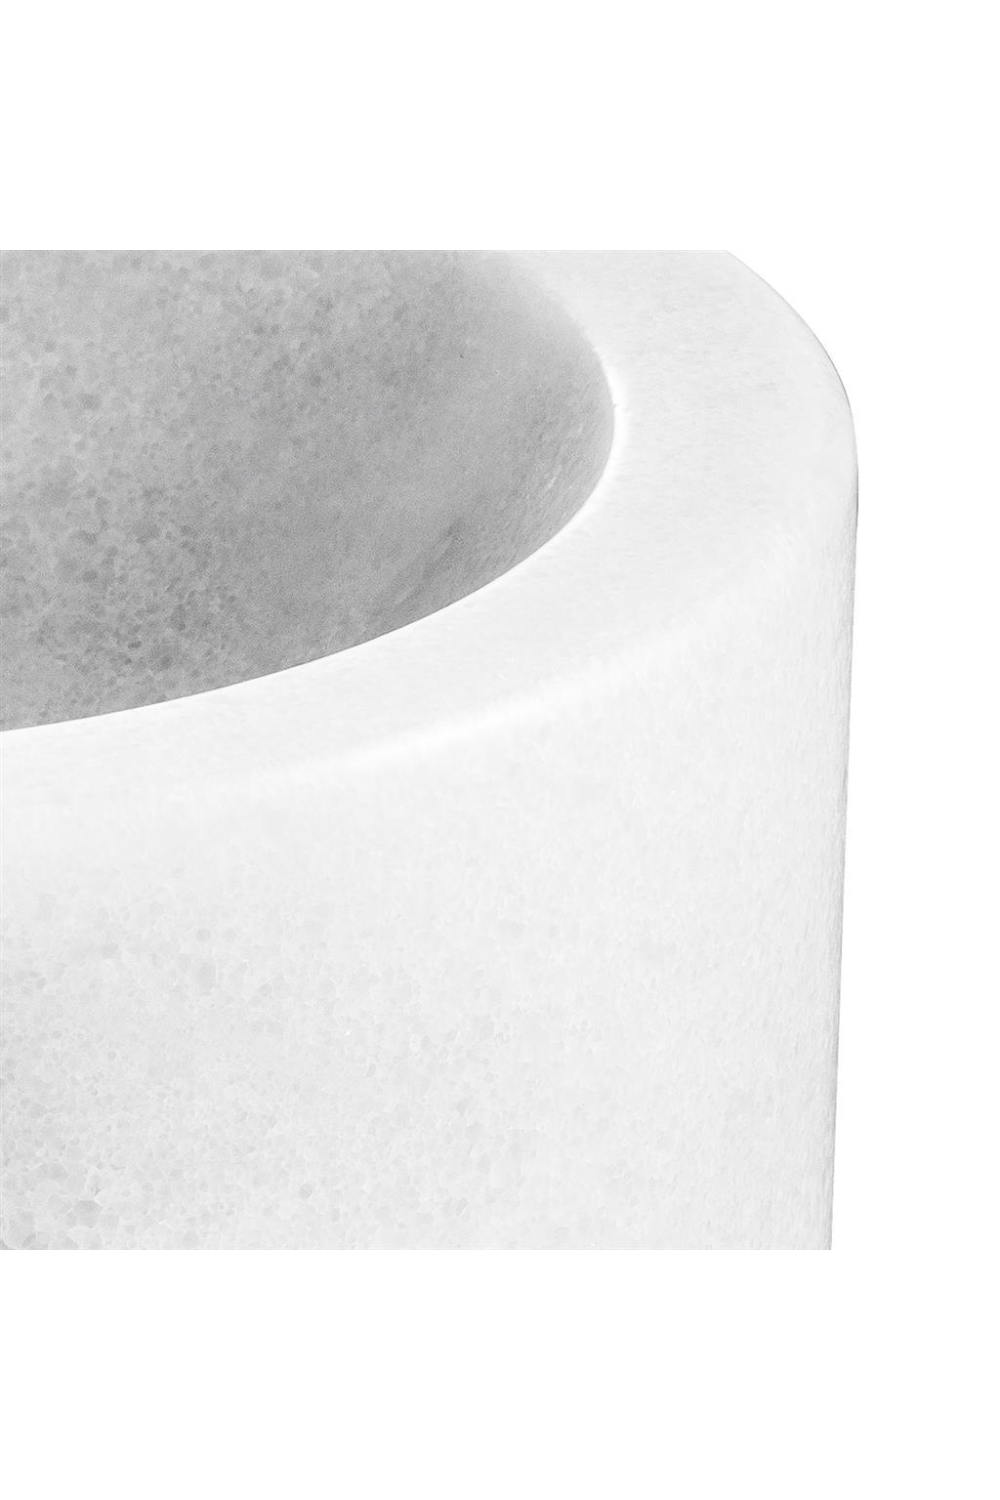 White Marble Bowl | Eichholtz Conex | OROA